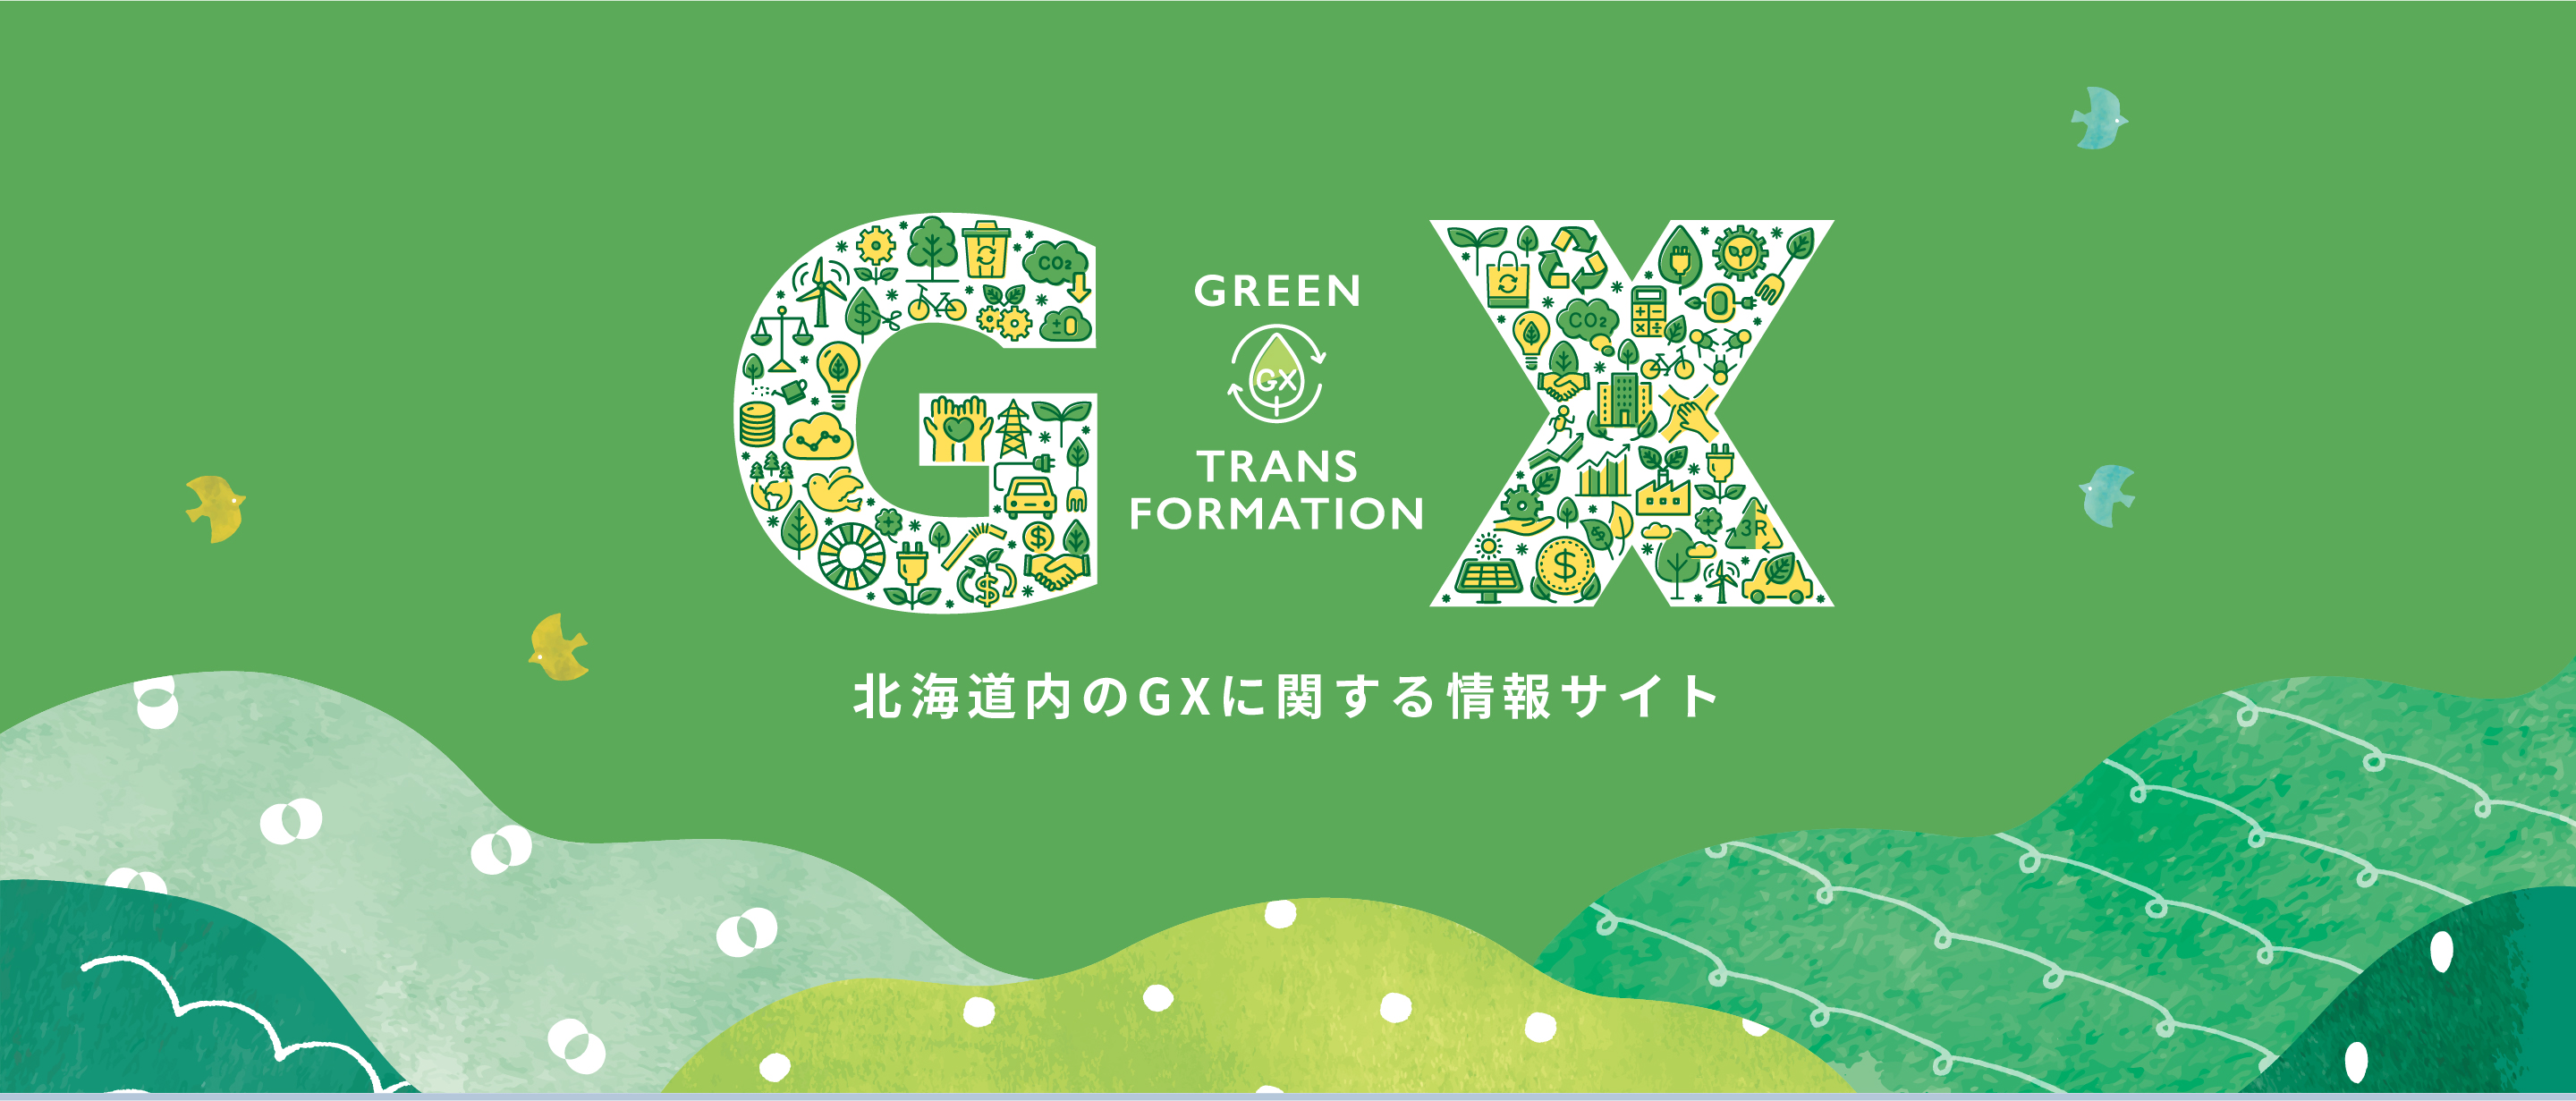 北海道内のGXに関する情報サイト